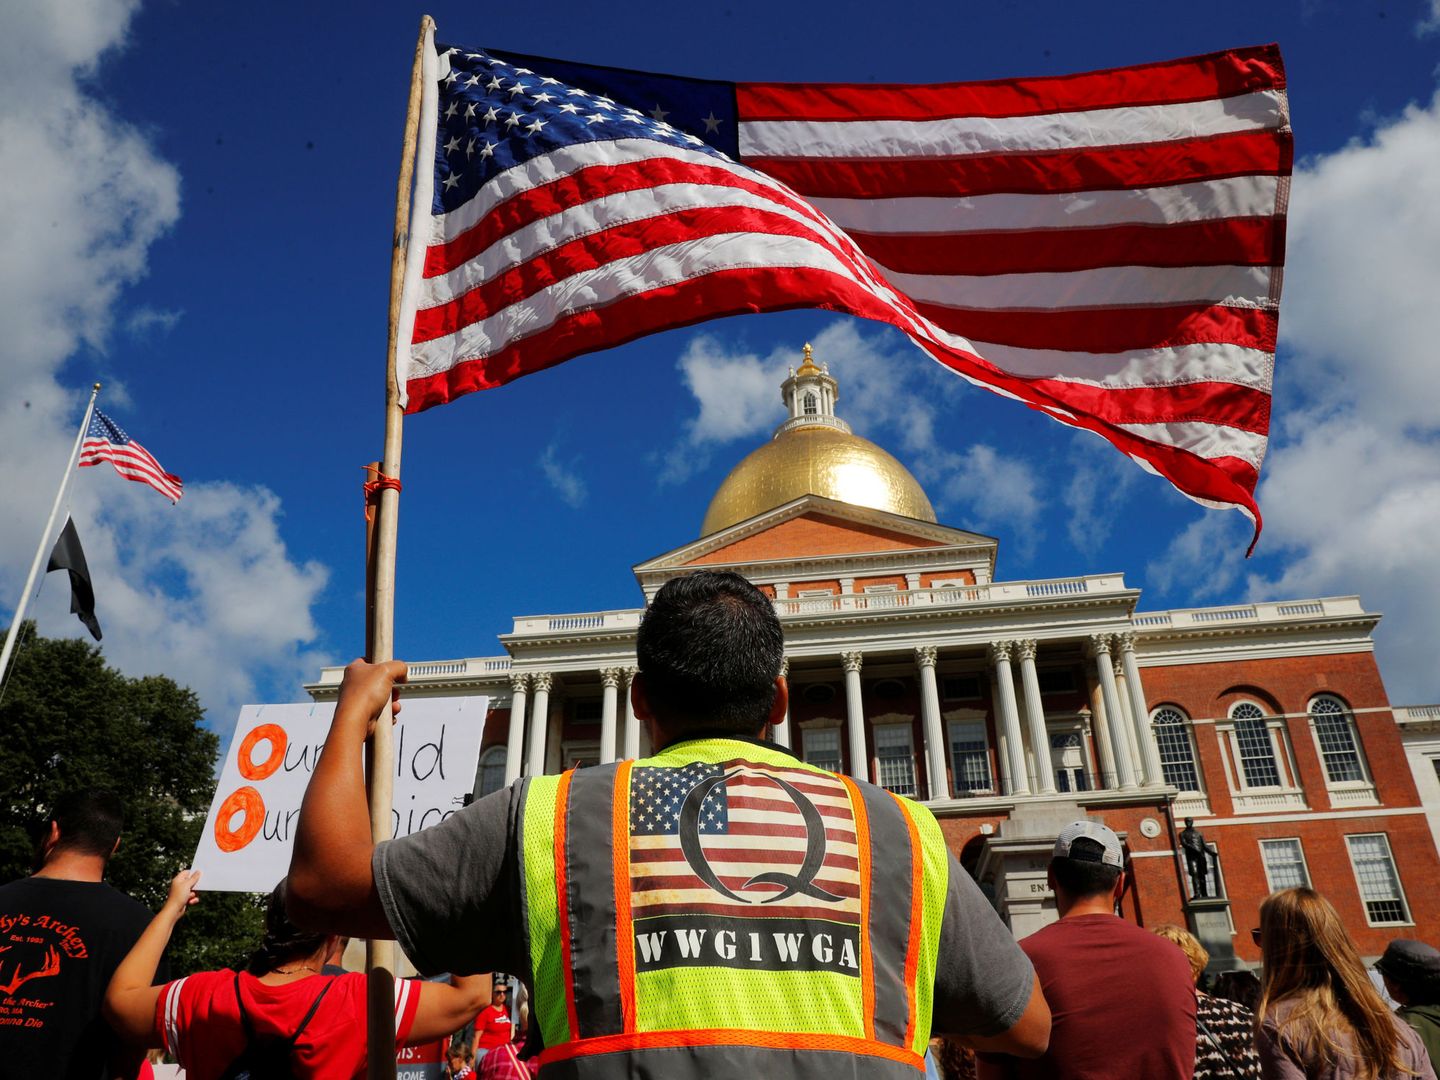 Un manifestante viste una camiseta con la Q de QAnon en una concentración republicana en Boston. (Reuters)